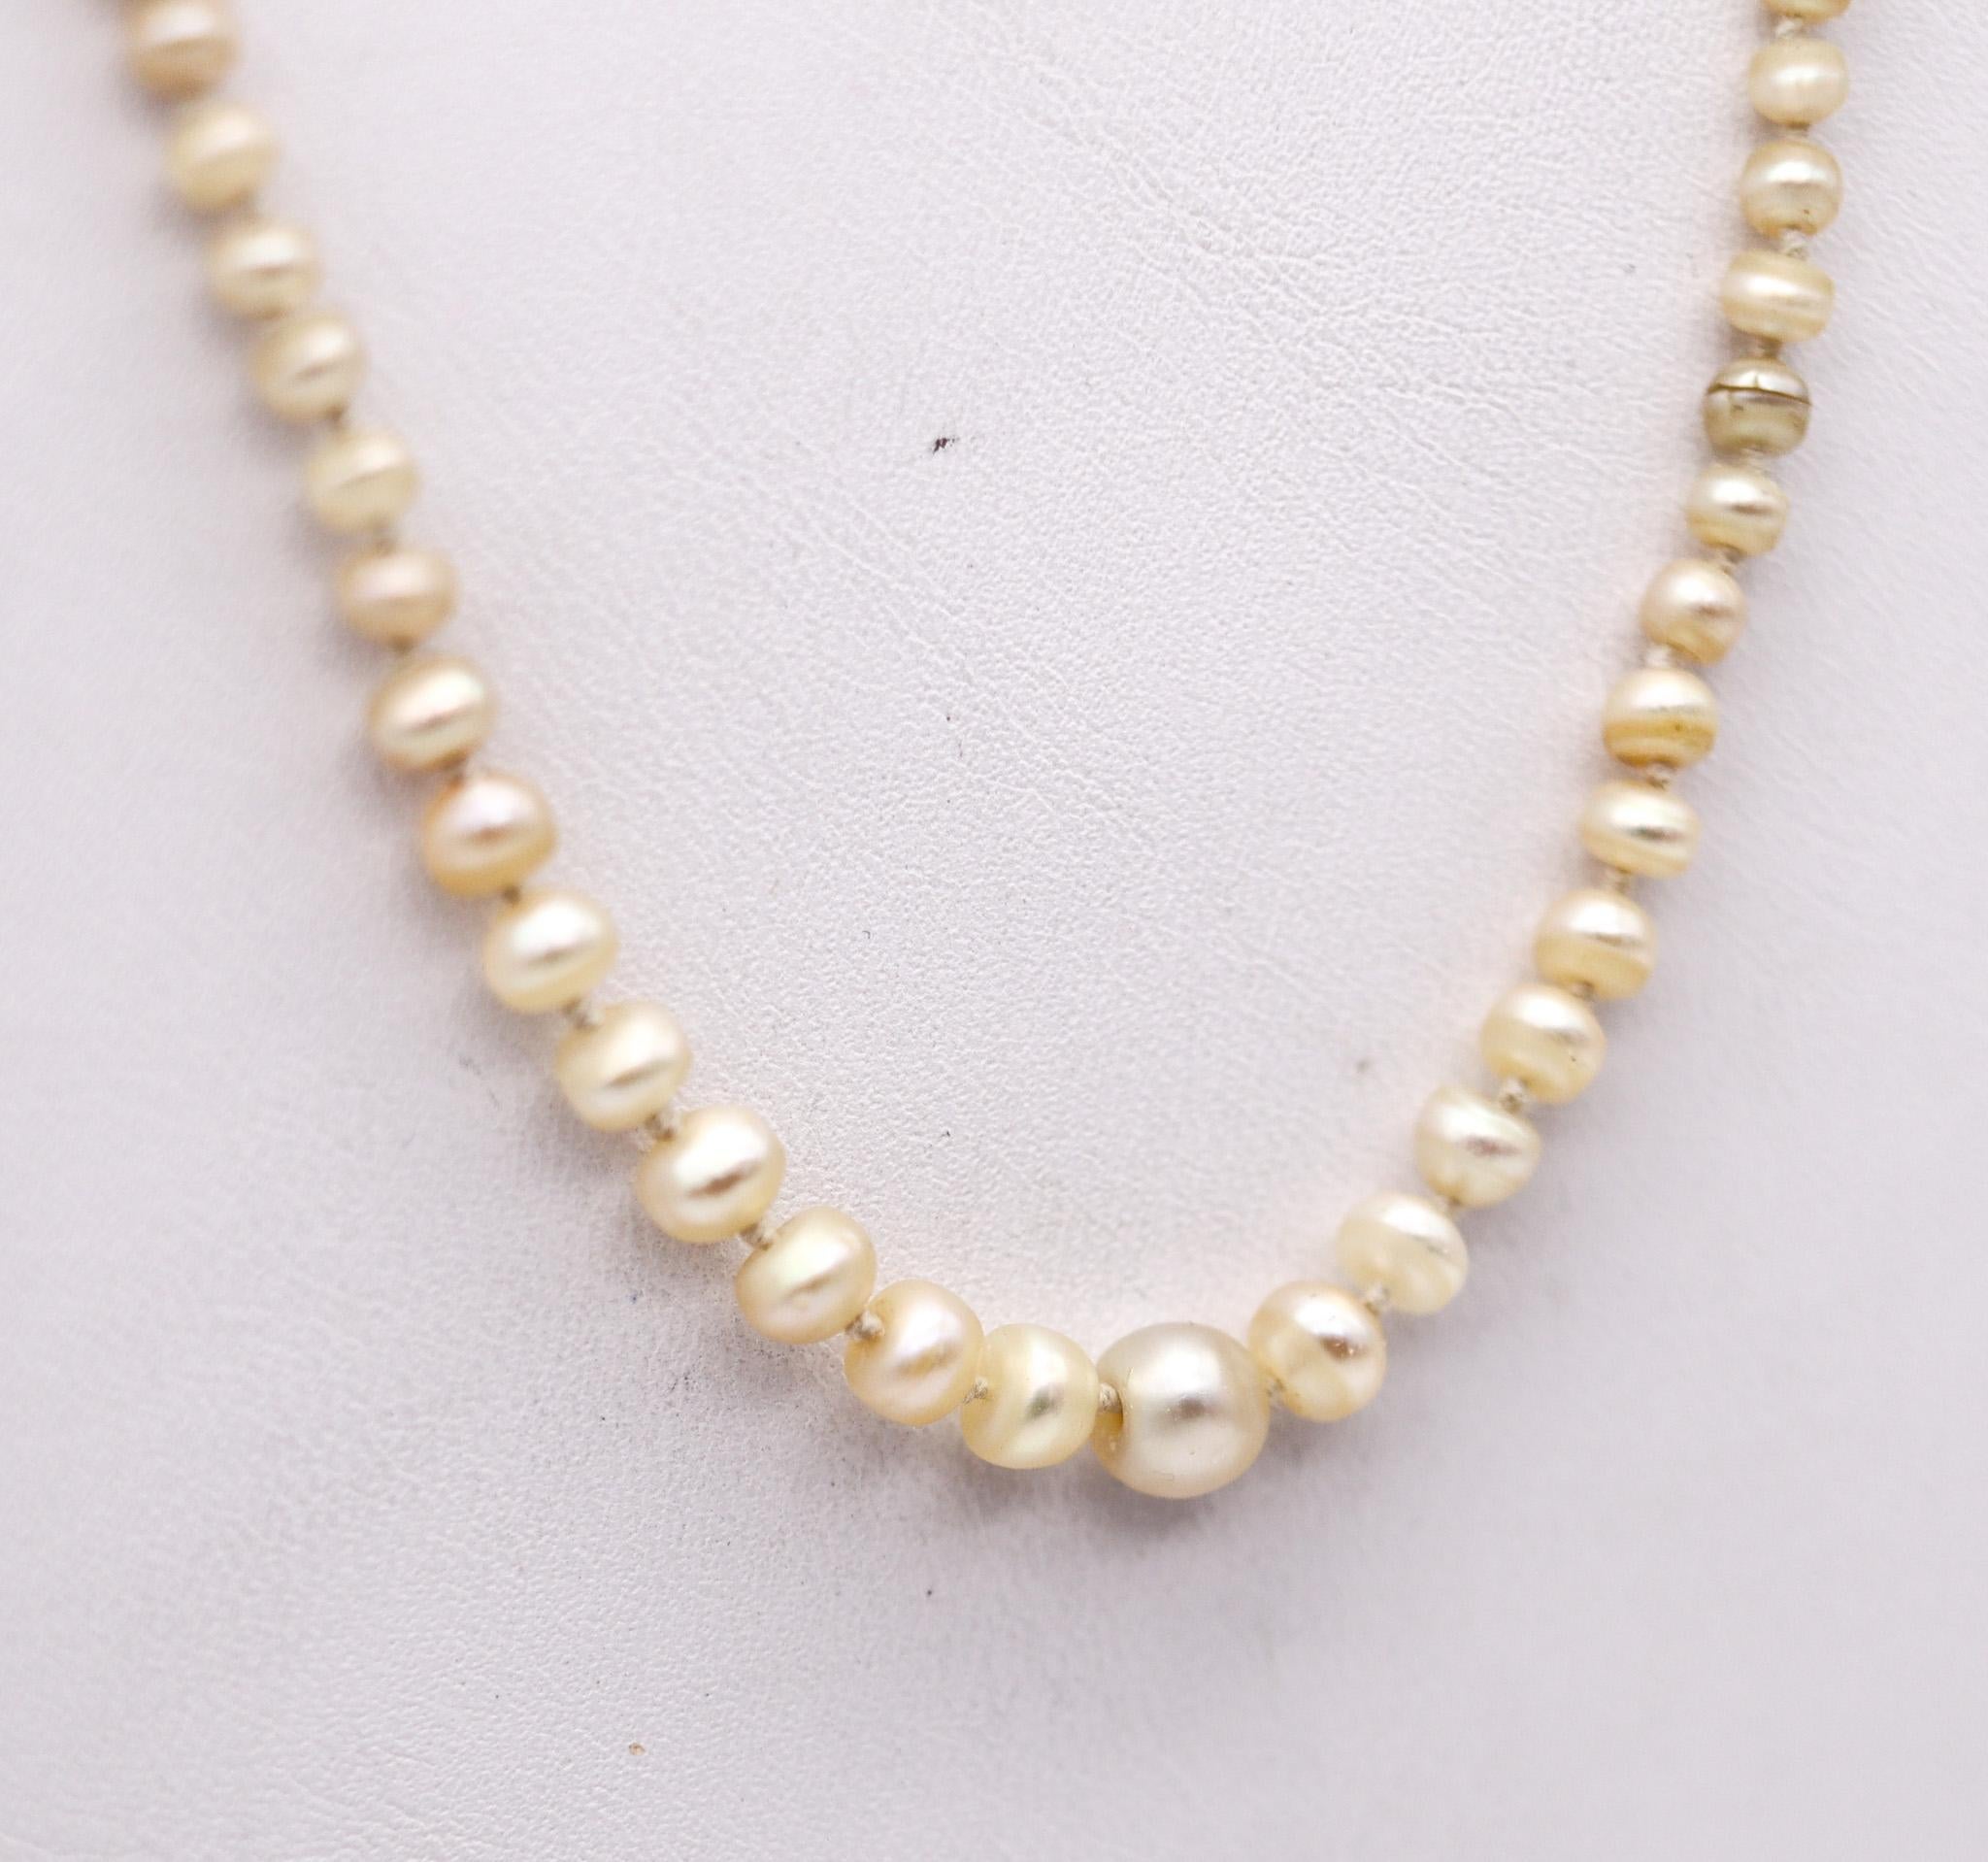 Edwardian belle époque Perlen Halskette.

Schöne und sehr zarte Halskette, die in England während der edwardianischen Belle-Epoque-Periode um 1910 entstand. Dieses Collier besteht aus einem geknoteten Strang von einhundertzwanzig Perlen und einem